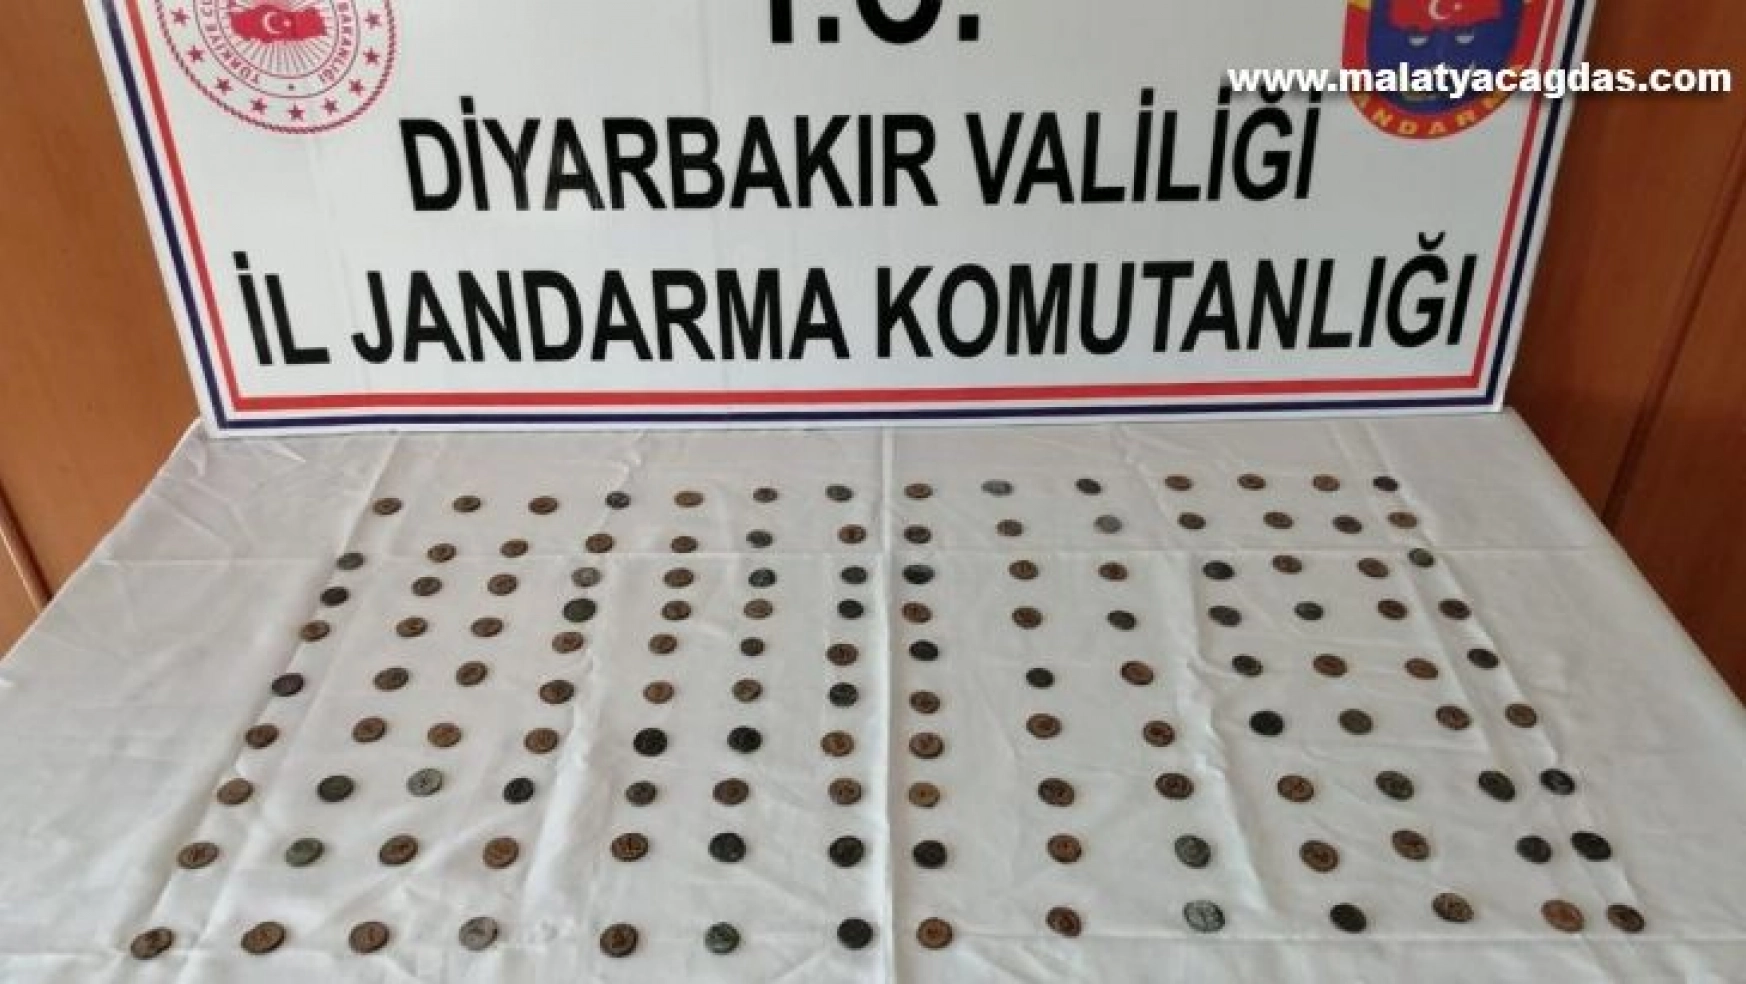 Diyarbakır'da 143 adet sikke ele geçirildi